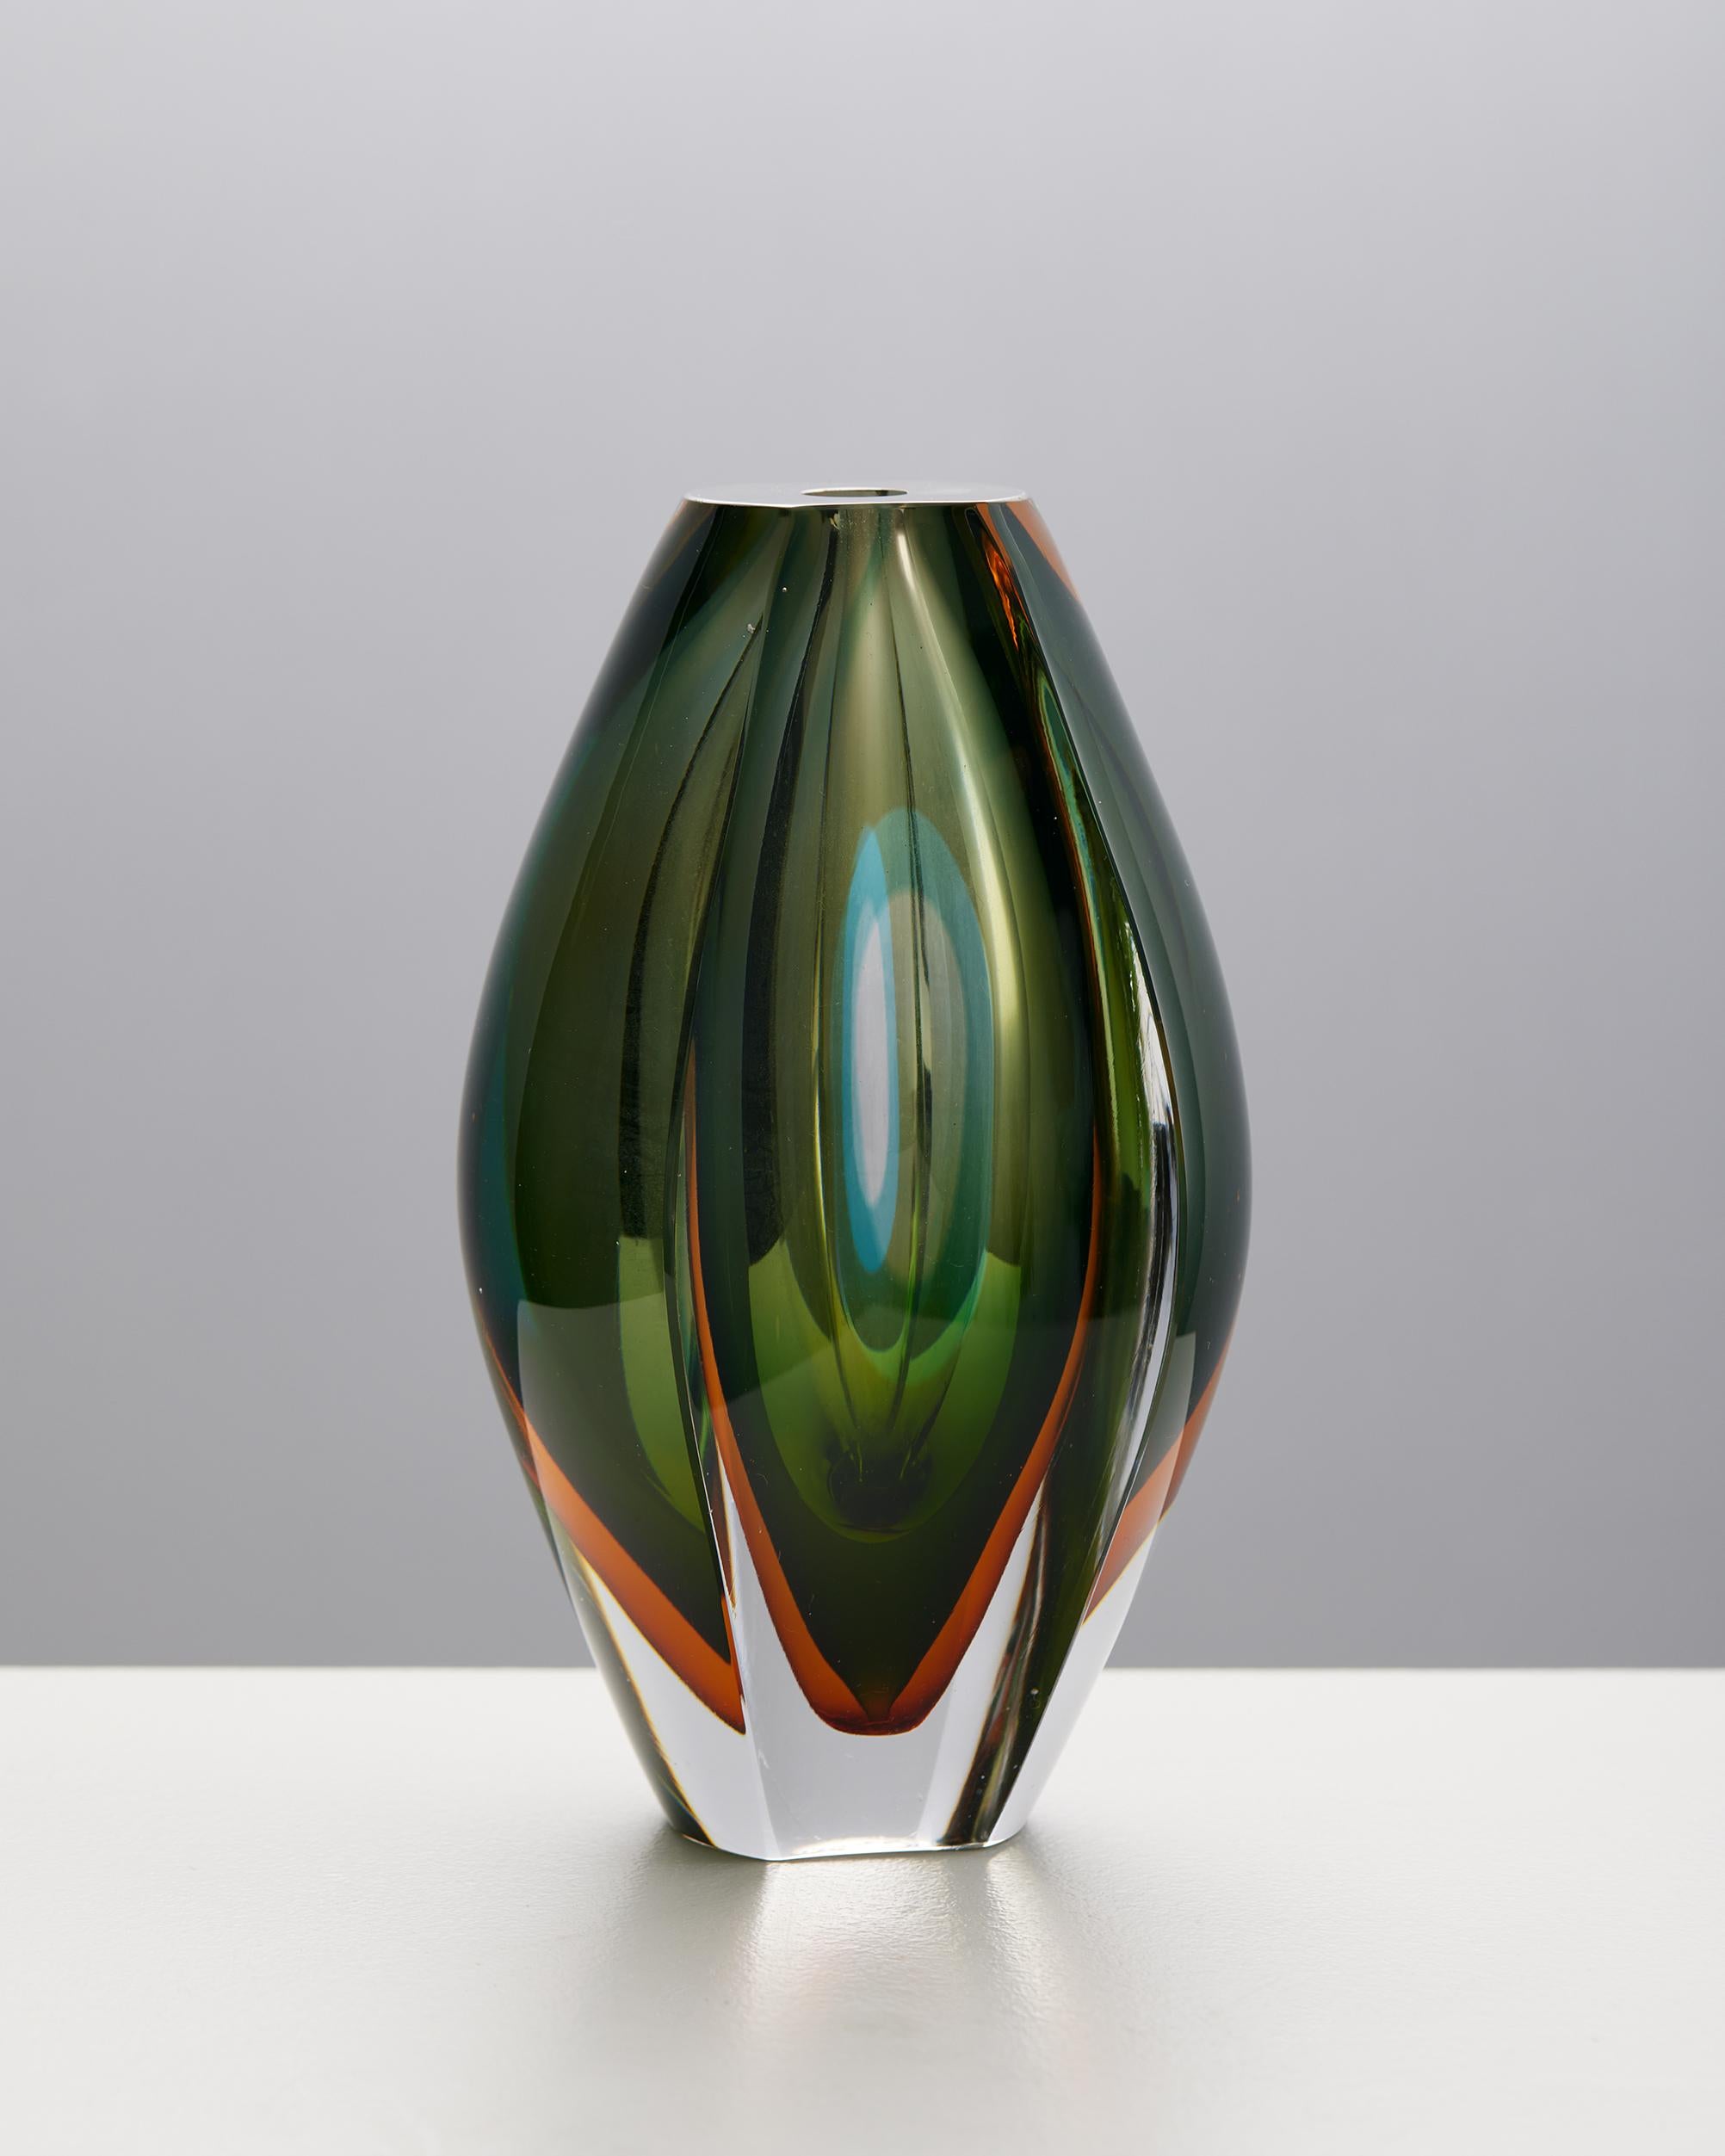 Vase 'Ventana' designed by Mona Morales-Schildt for Kosta, Sweden, 1950s
Signed.

Glass.

H: 16 cm
W: 10 cm
D: 8.5 cm